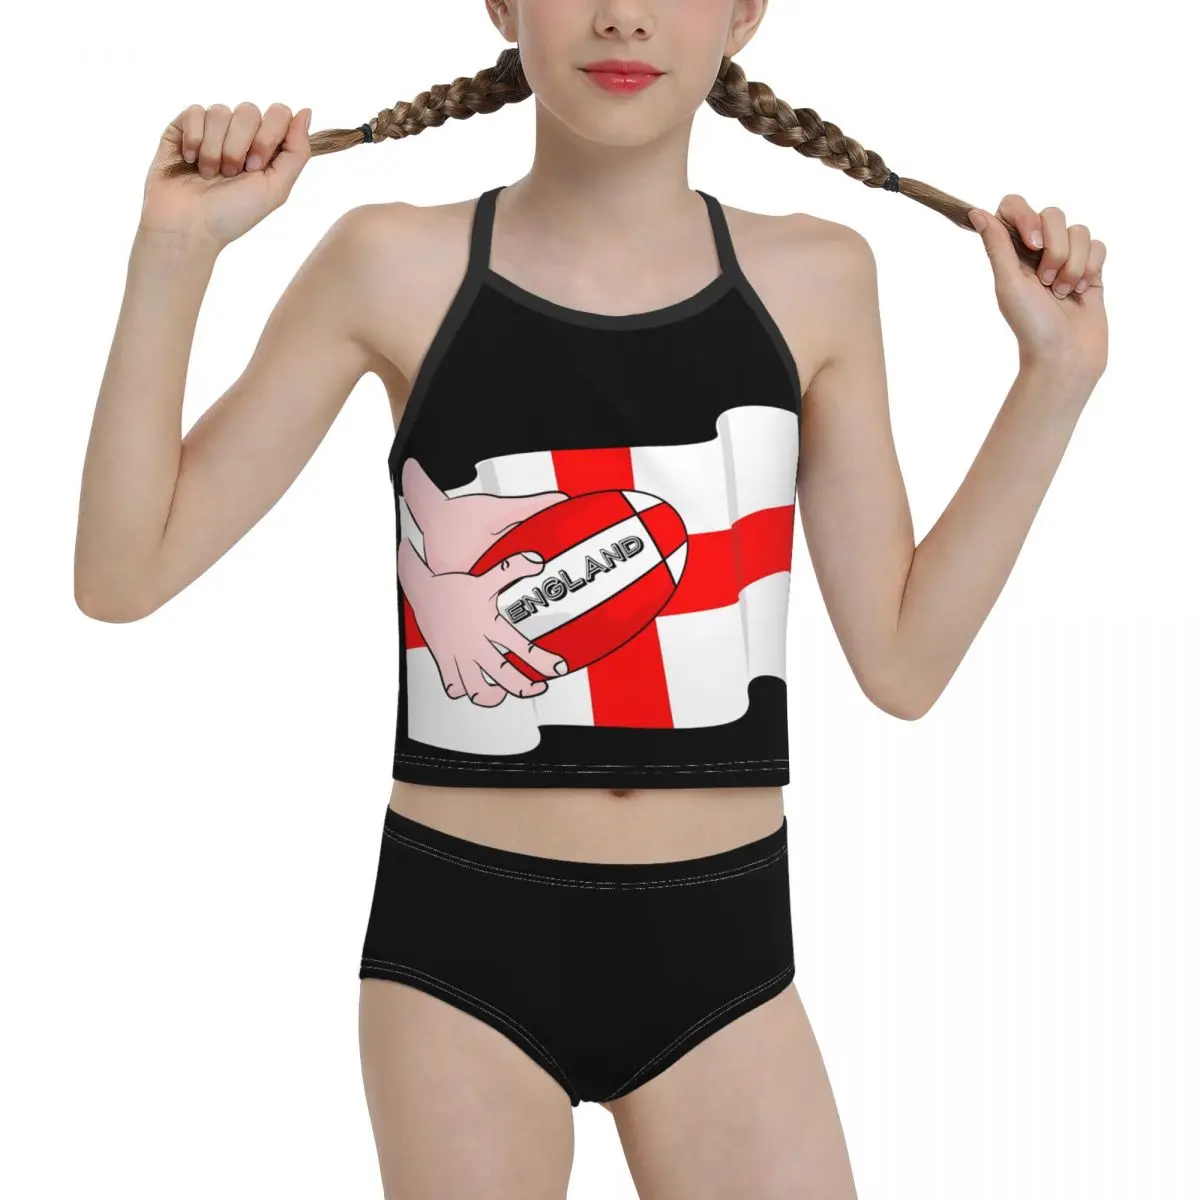 

2021 Национальный купальный костюм для девочек младшей старшей школы, принт, регби, флаг Англии, бикини, оптовая продажа, бренд для девочек